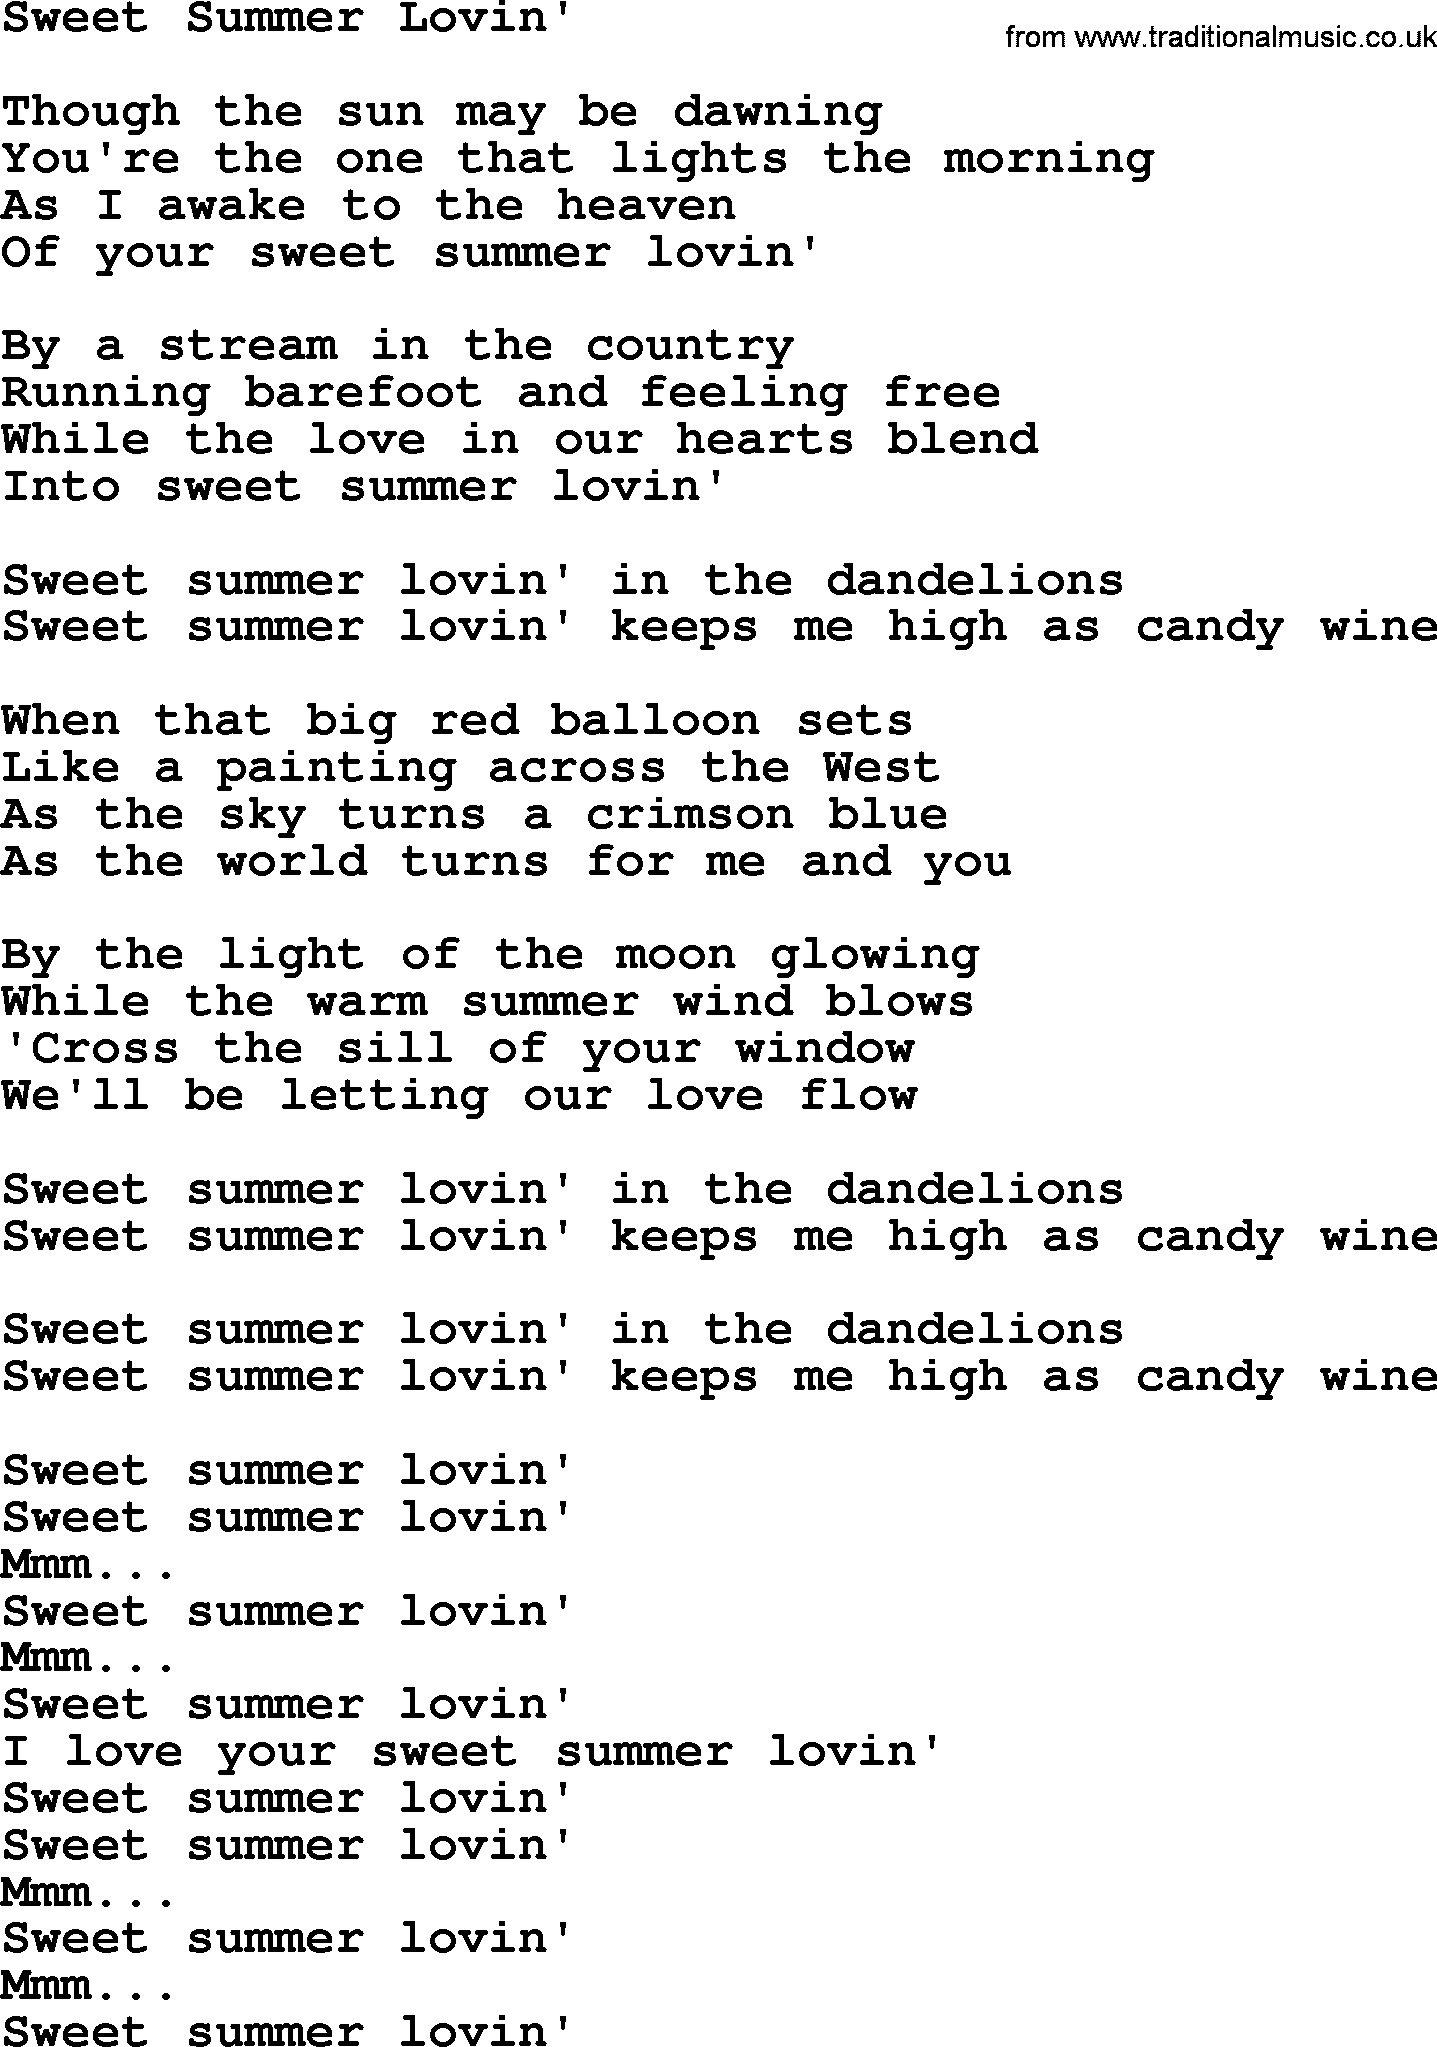 Dolly Parton song Sweet Summer Lovin'.txt lyrics